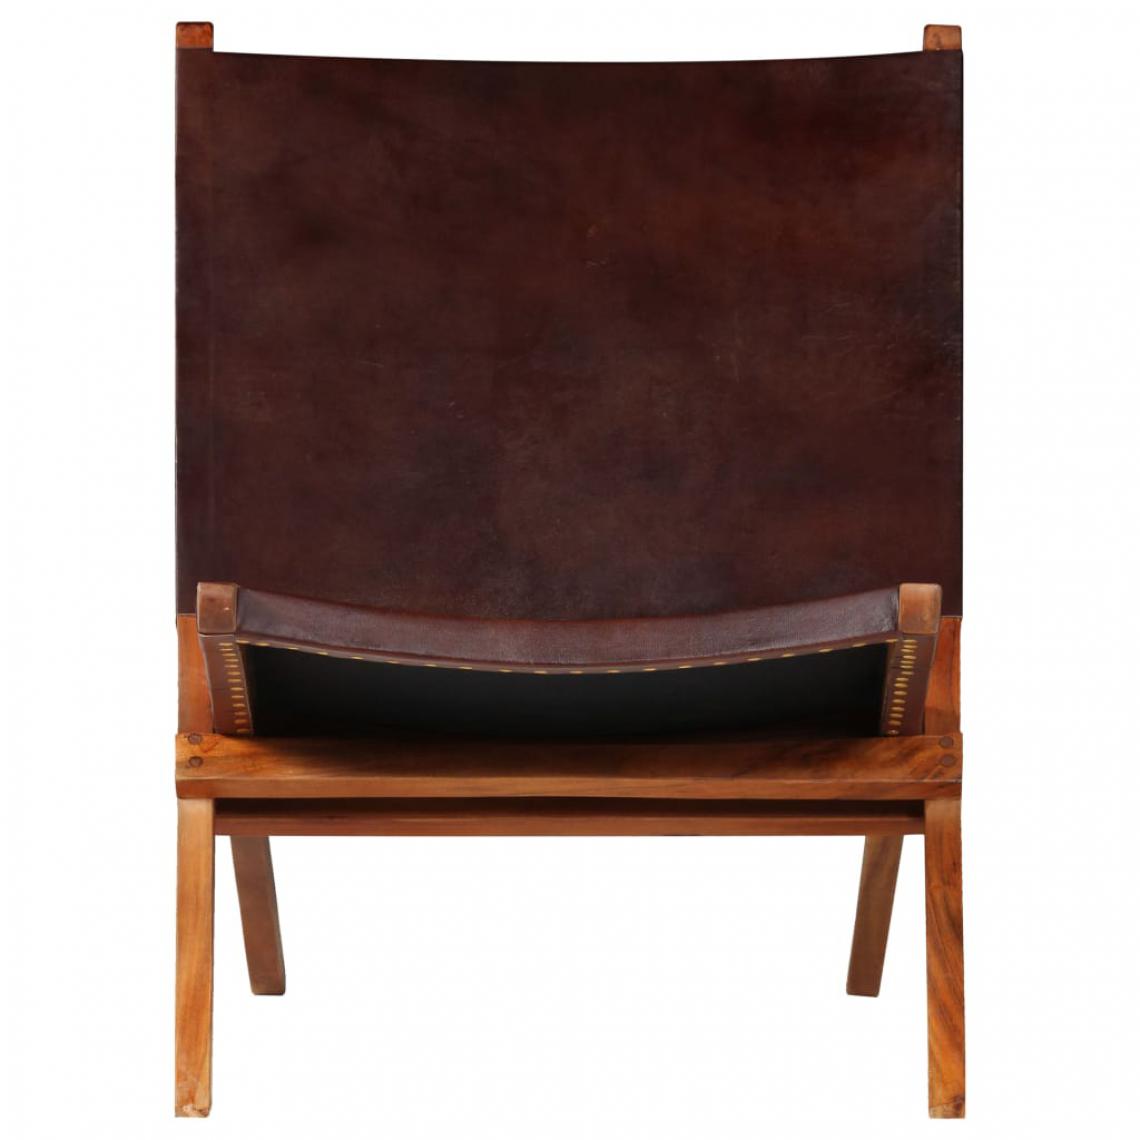 Icaverne - Icaverne - Chaises pliantes et tabourets pliants selection Chaise de relaxation Cuir véritable 59 x 72 x 79 cm Marron - Chaises